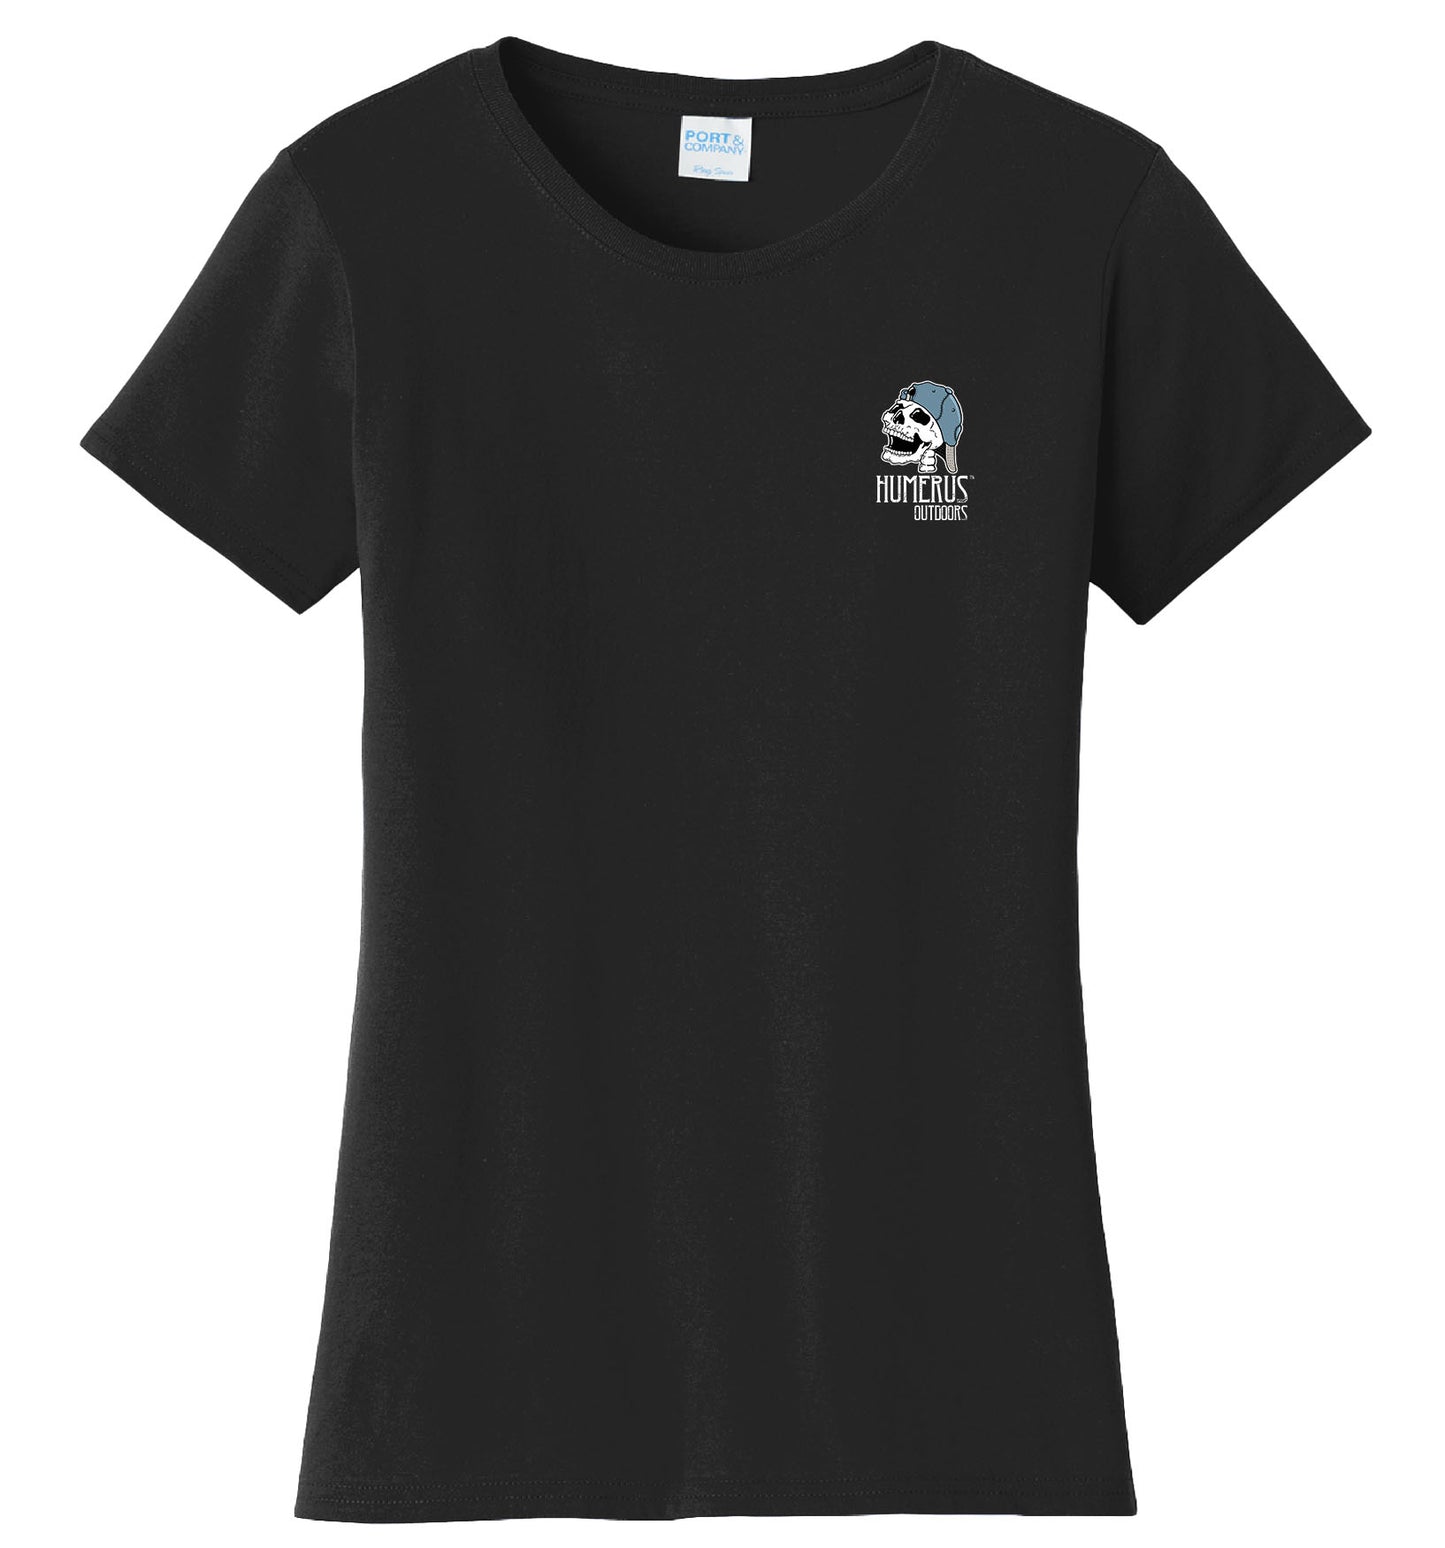 Teamwork - Women's Short Sleeve T-Shirt